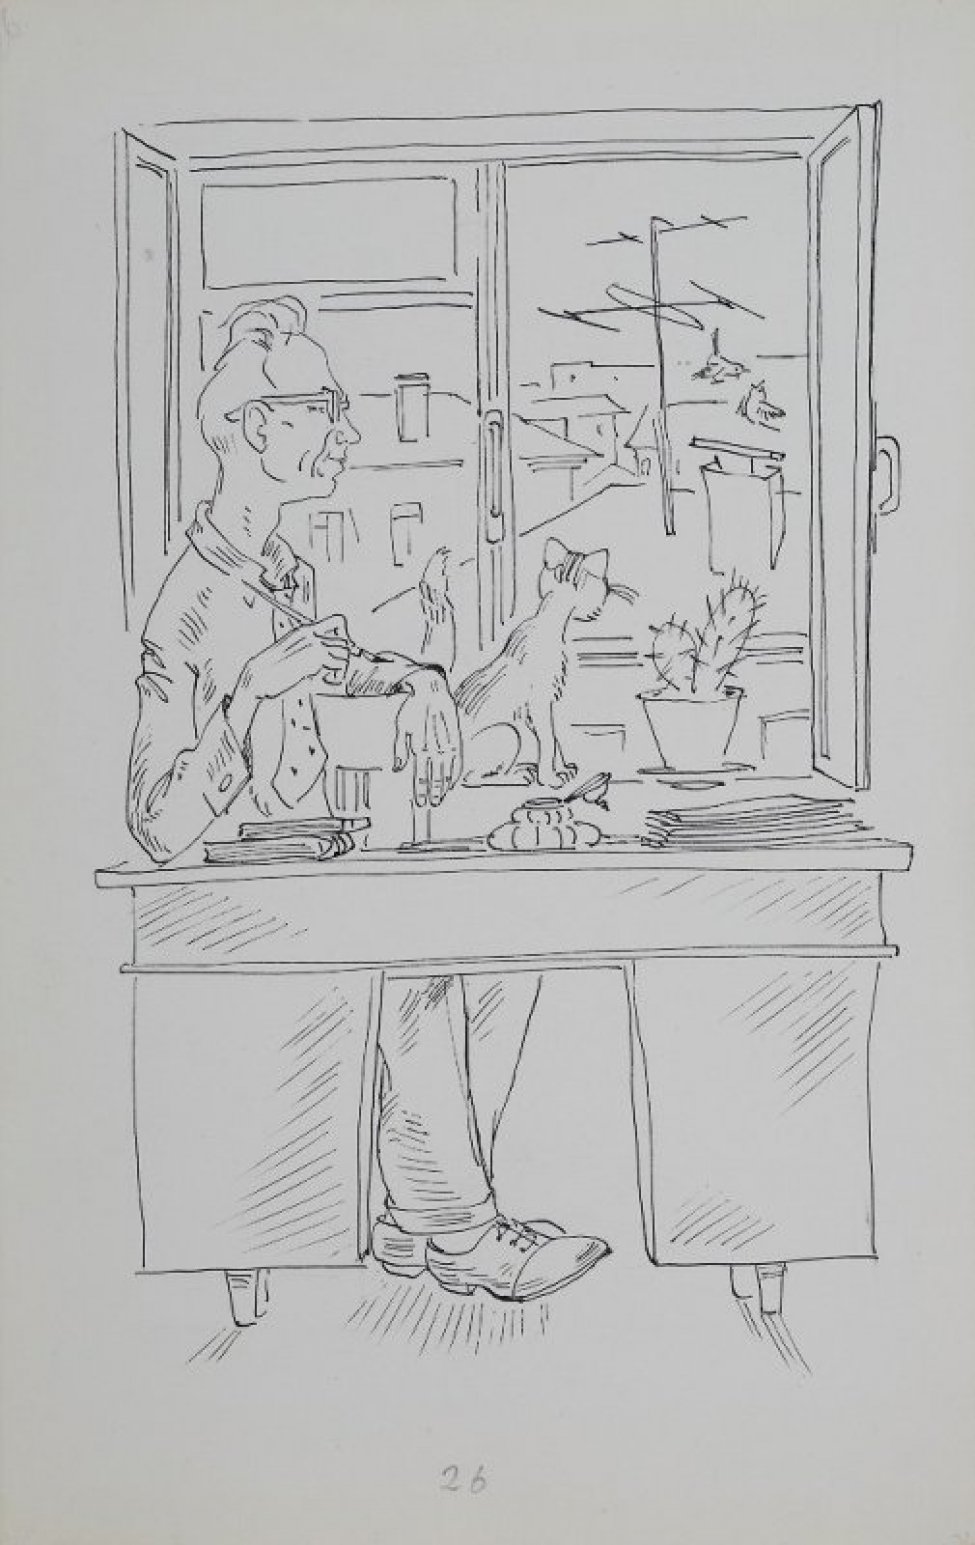 Дано профильное изображение пожилого мужчины в очках, сидящего за письменным столом у окна; на подоконнике возле кактуса сидит кошка; за окном виден городской пейзаж с воробьями над крышей.